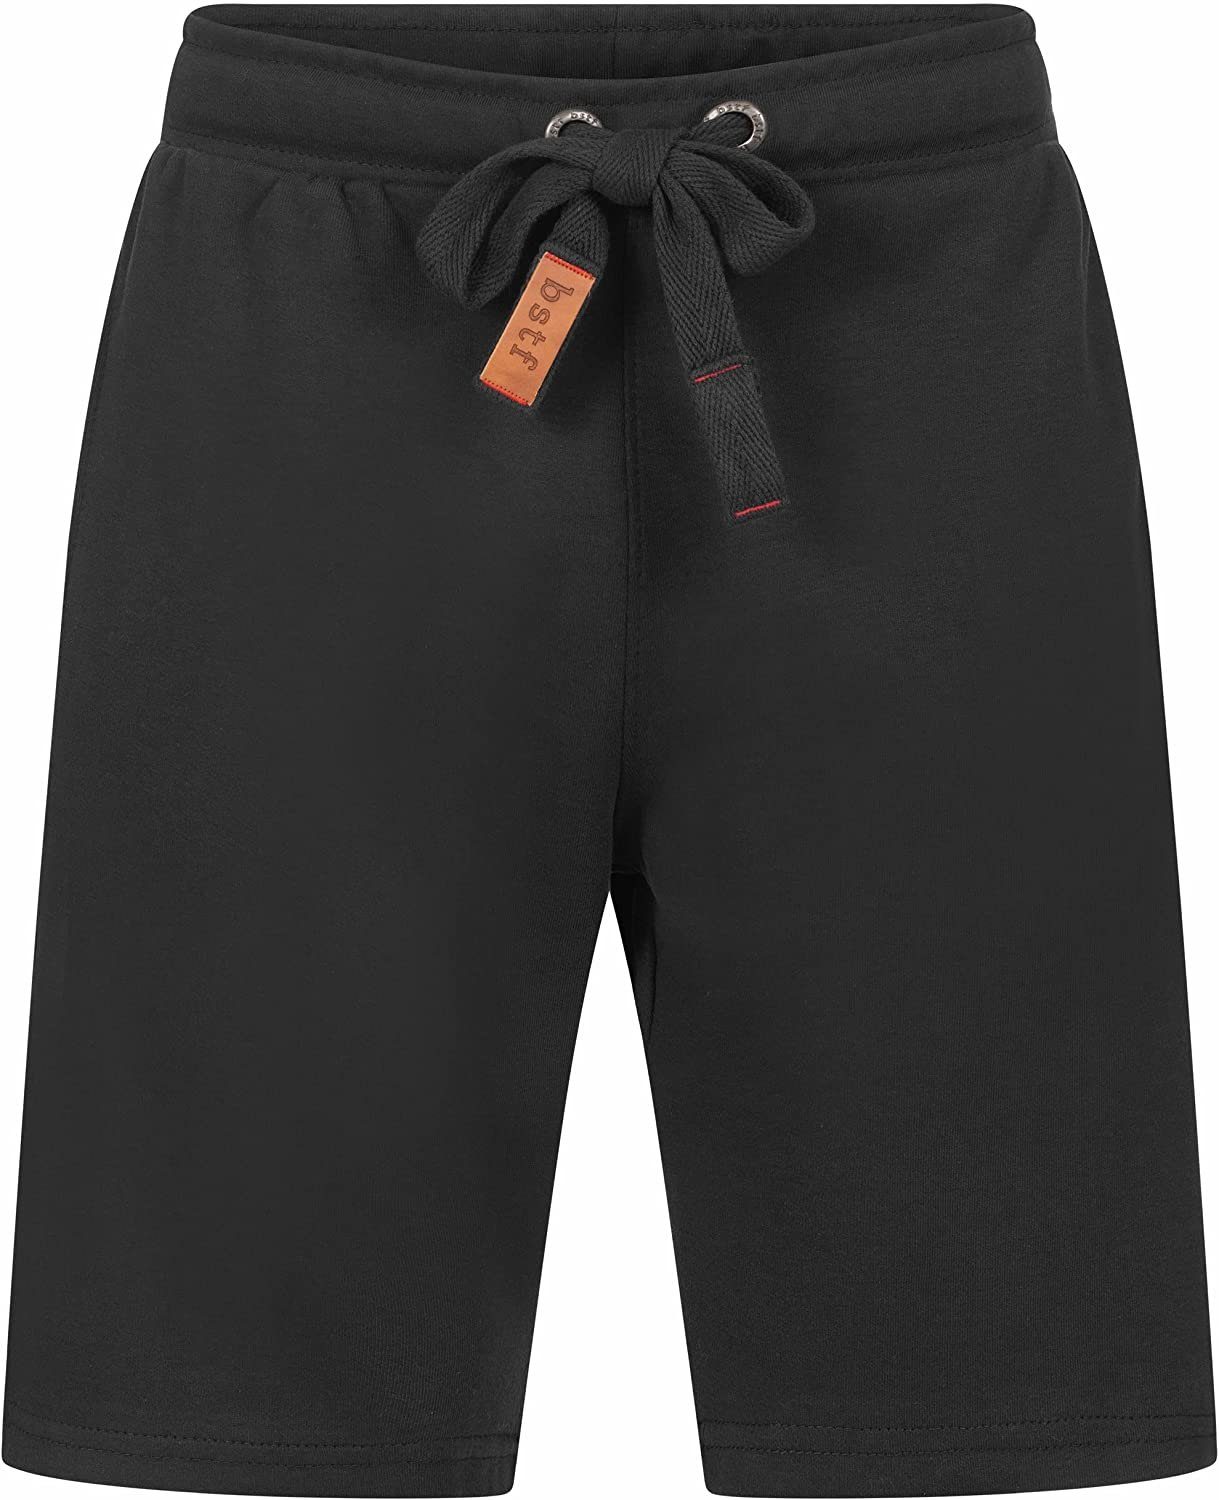 Kurze Basisstoff Wyld Hose aus Herren Shorts Baumwolle Schwarz Bermuda Shorts